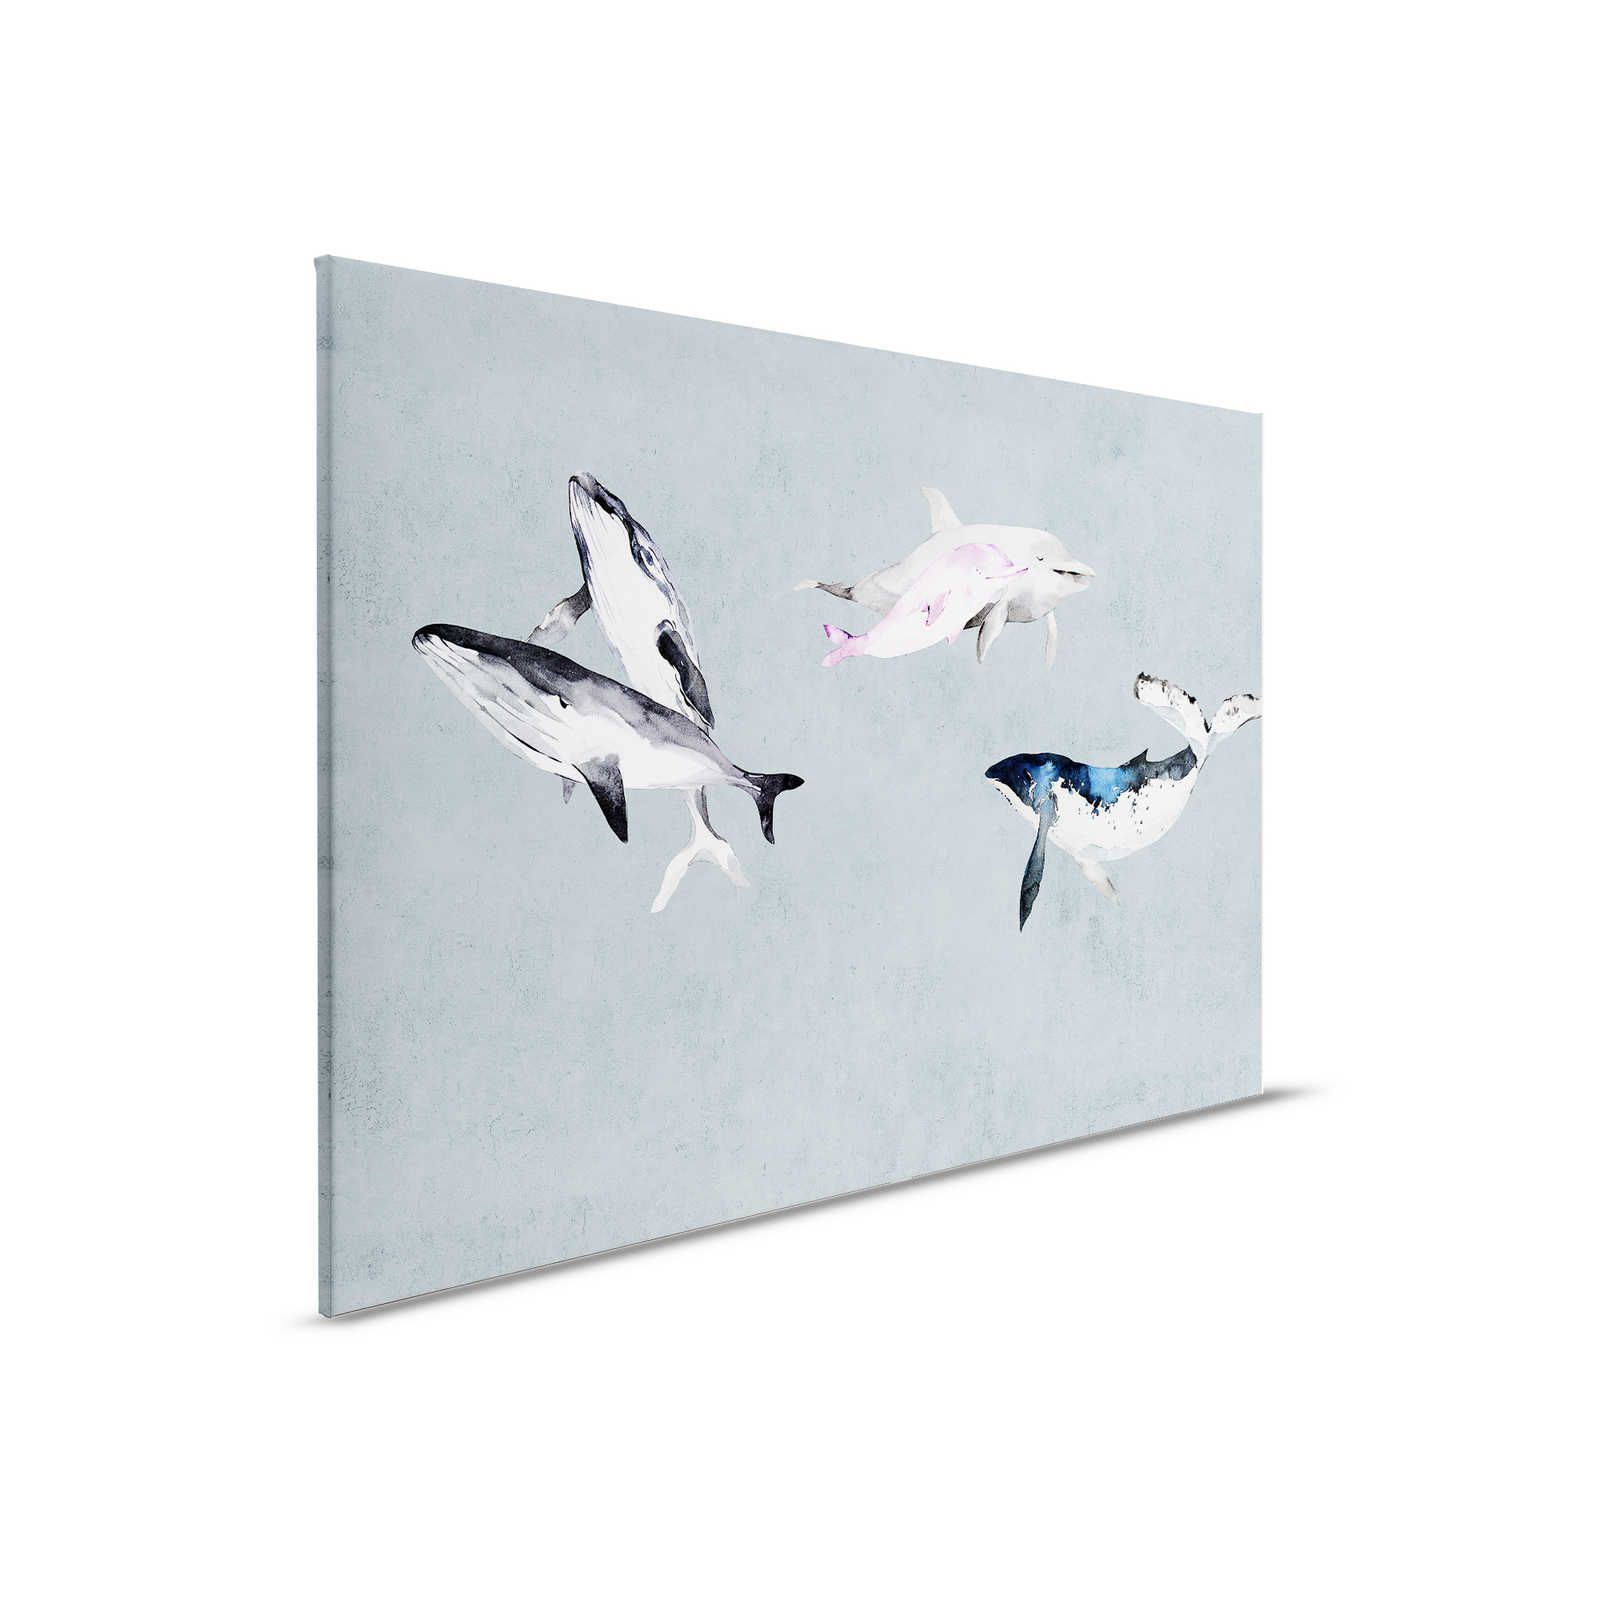 Oceans Five 1 - Cuadro en lienzo Ballenas y delfines en estilo acuarela - 0,90 m x 0,60 m
